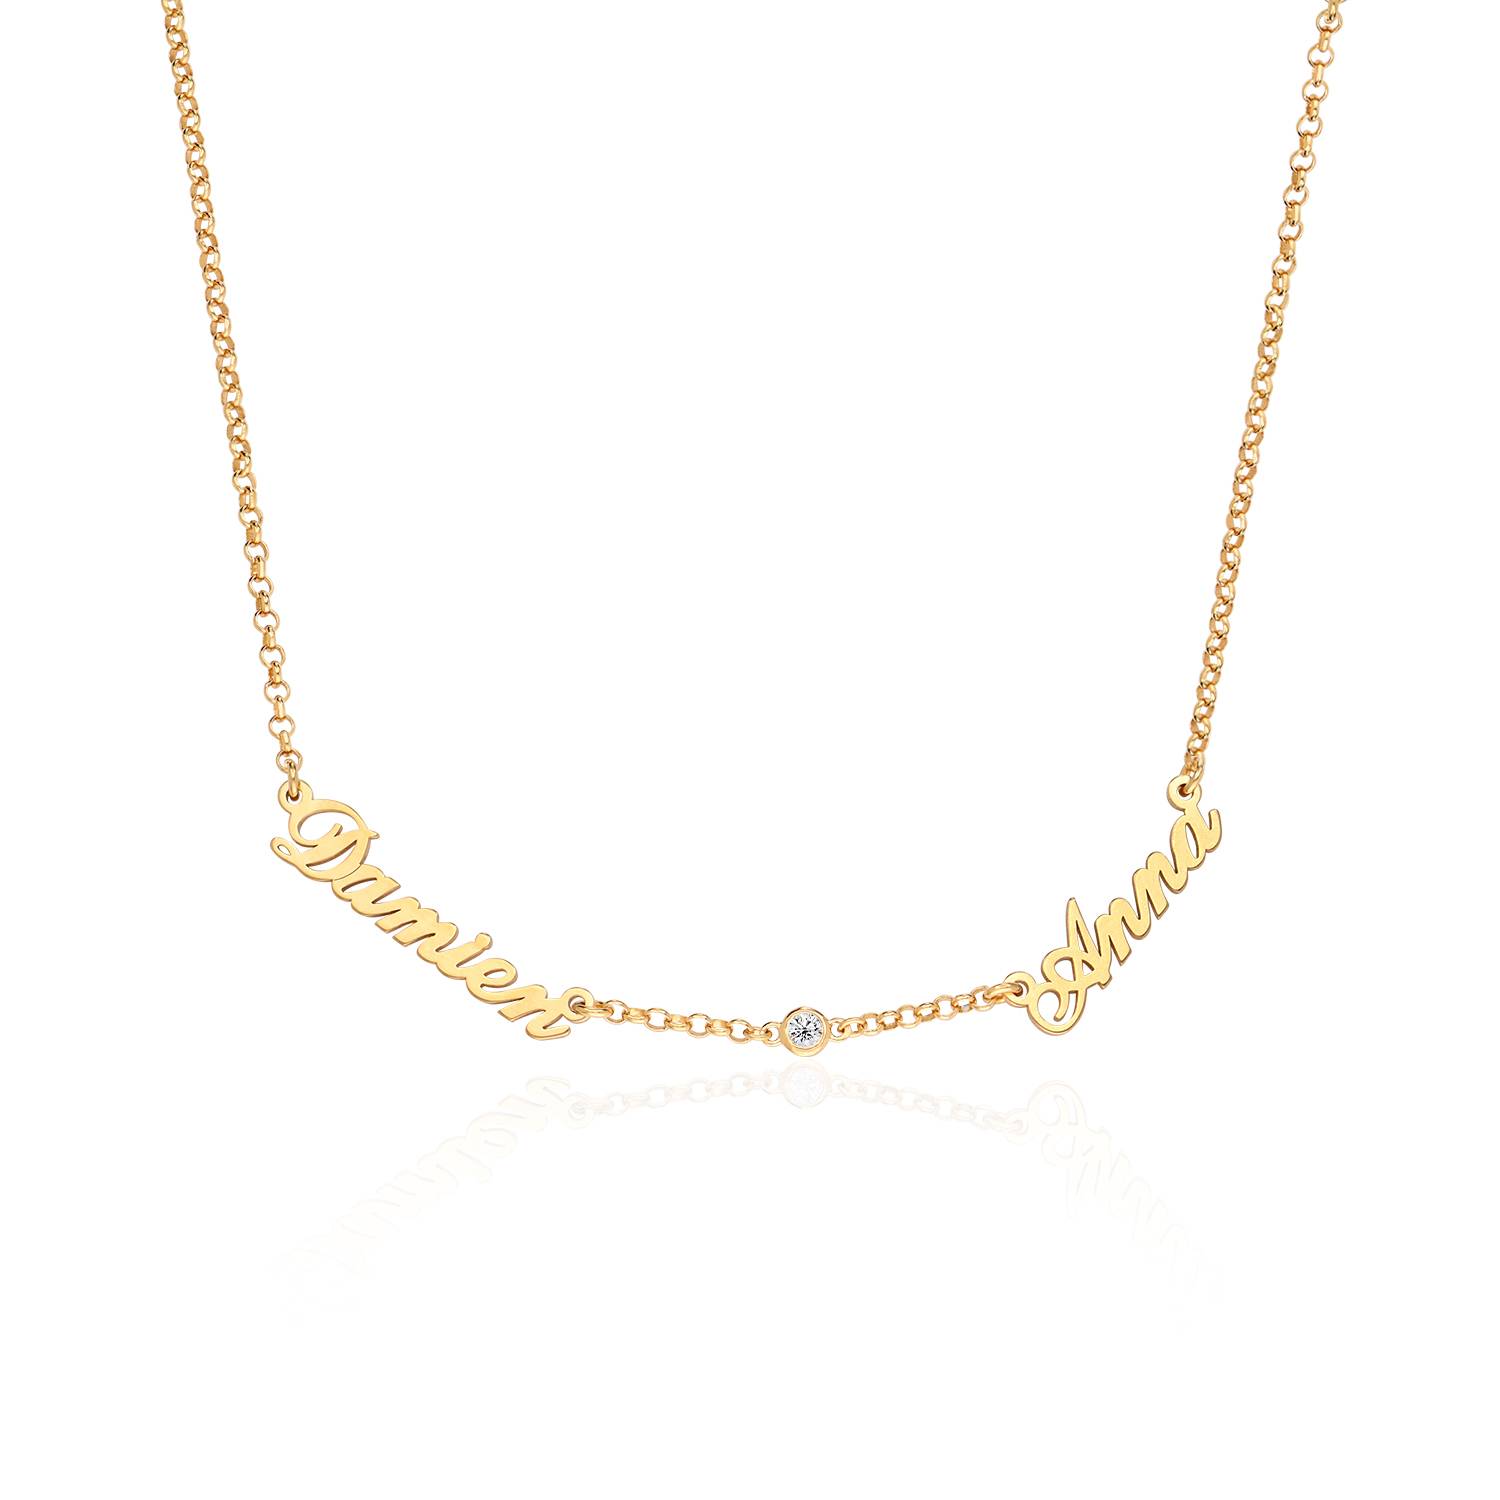 Collar con Nombres Múltiples Estilo Heritage en Oro Vermeil de 18K con Diamante foto de producto